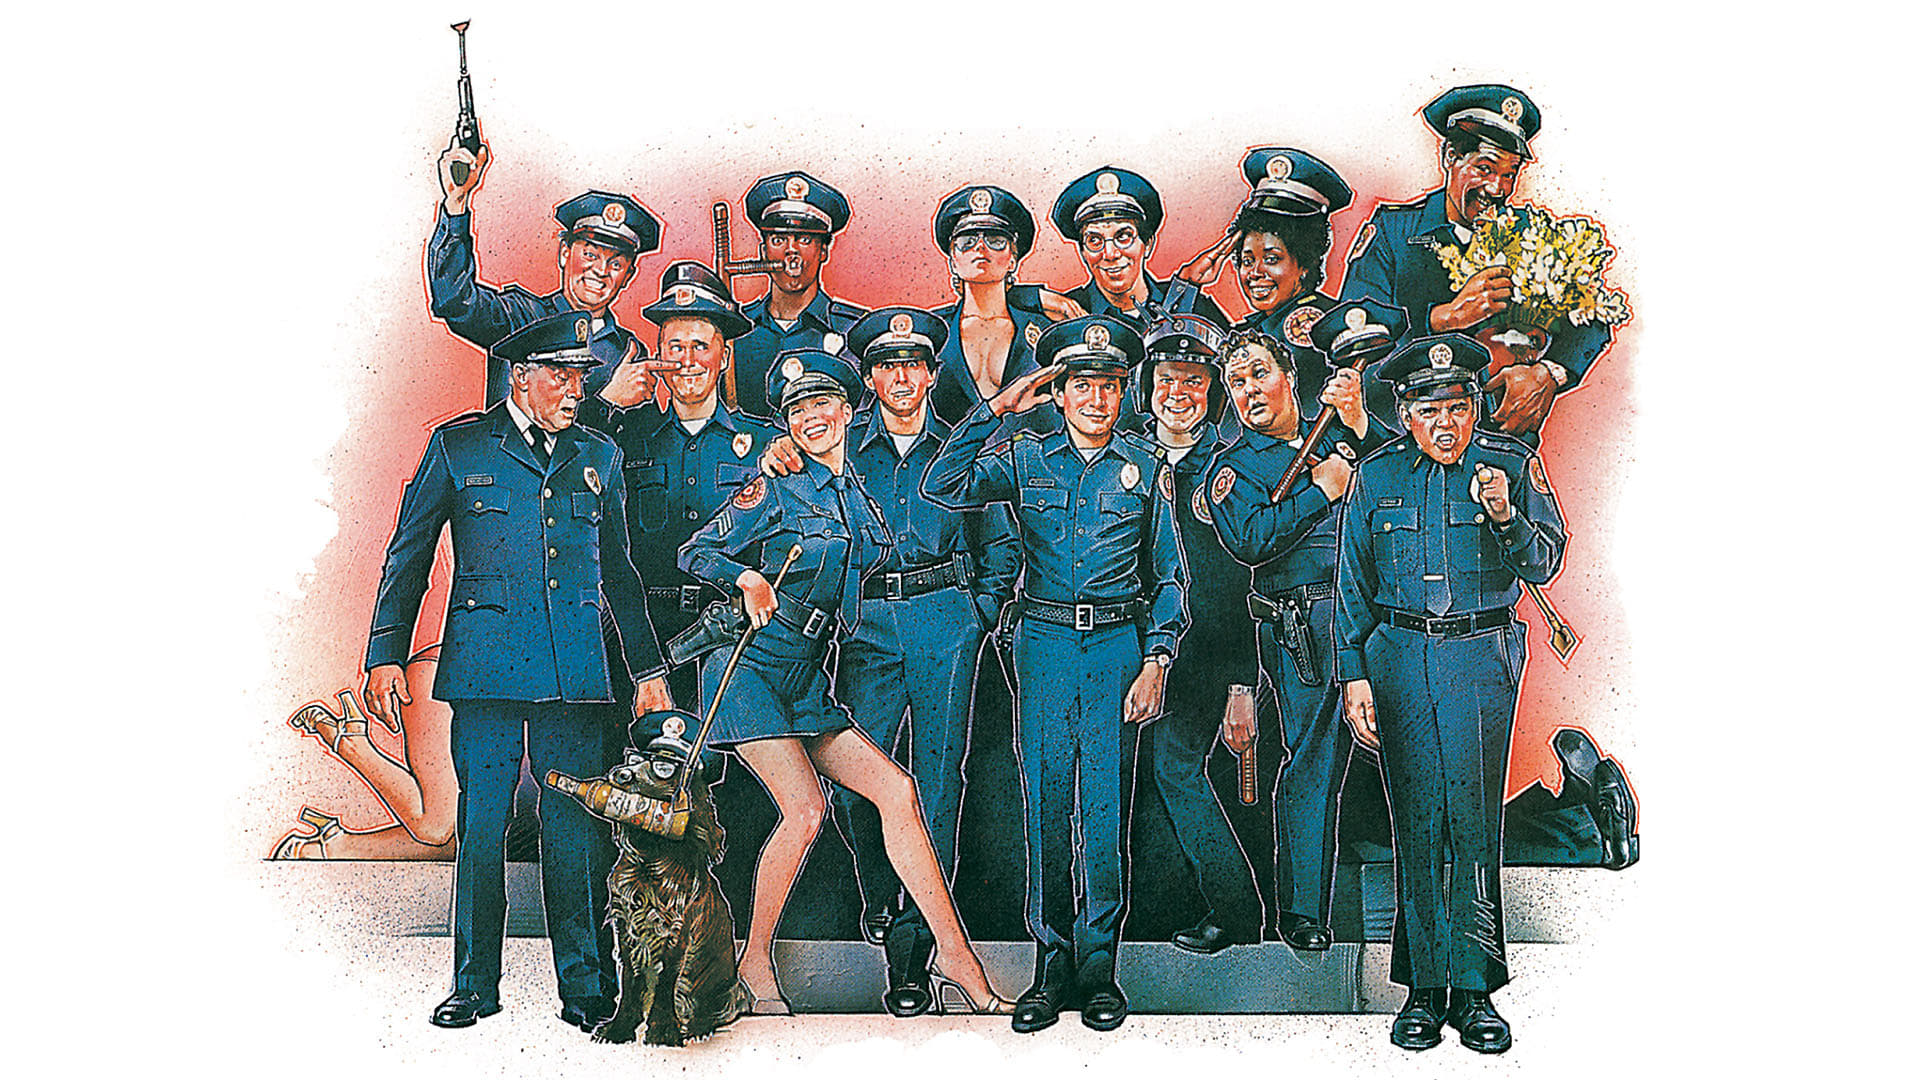 Polis Akademisi (1984)